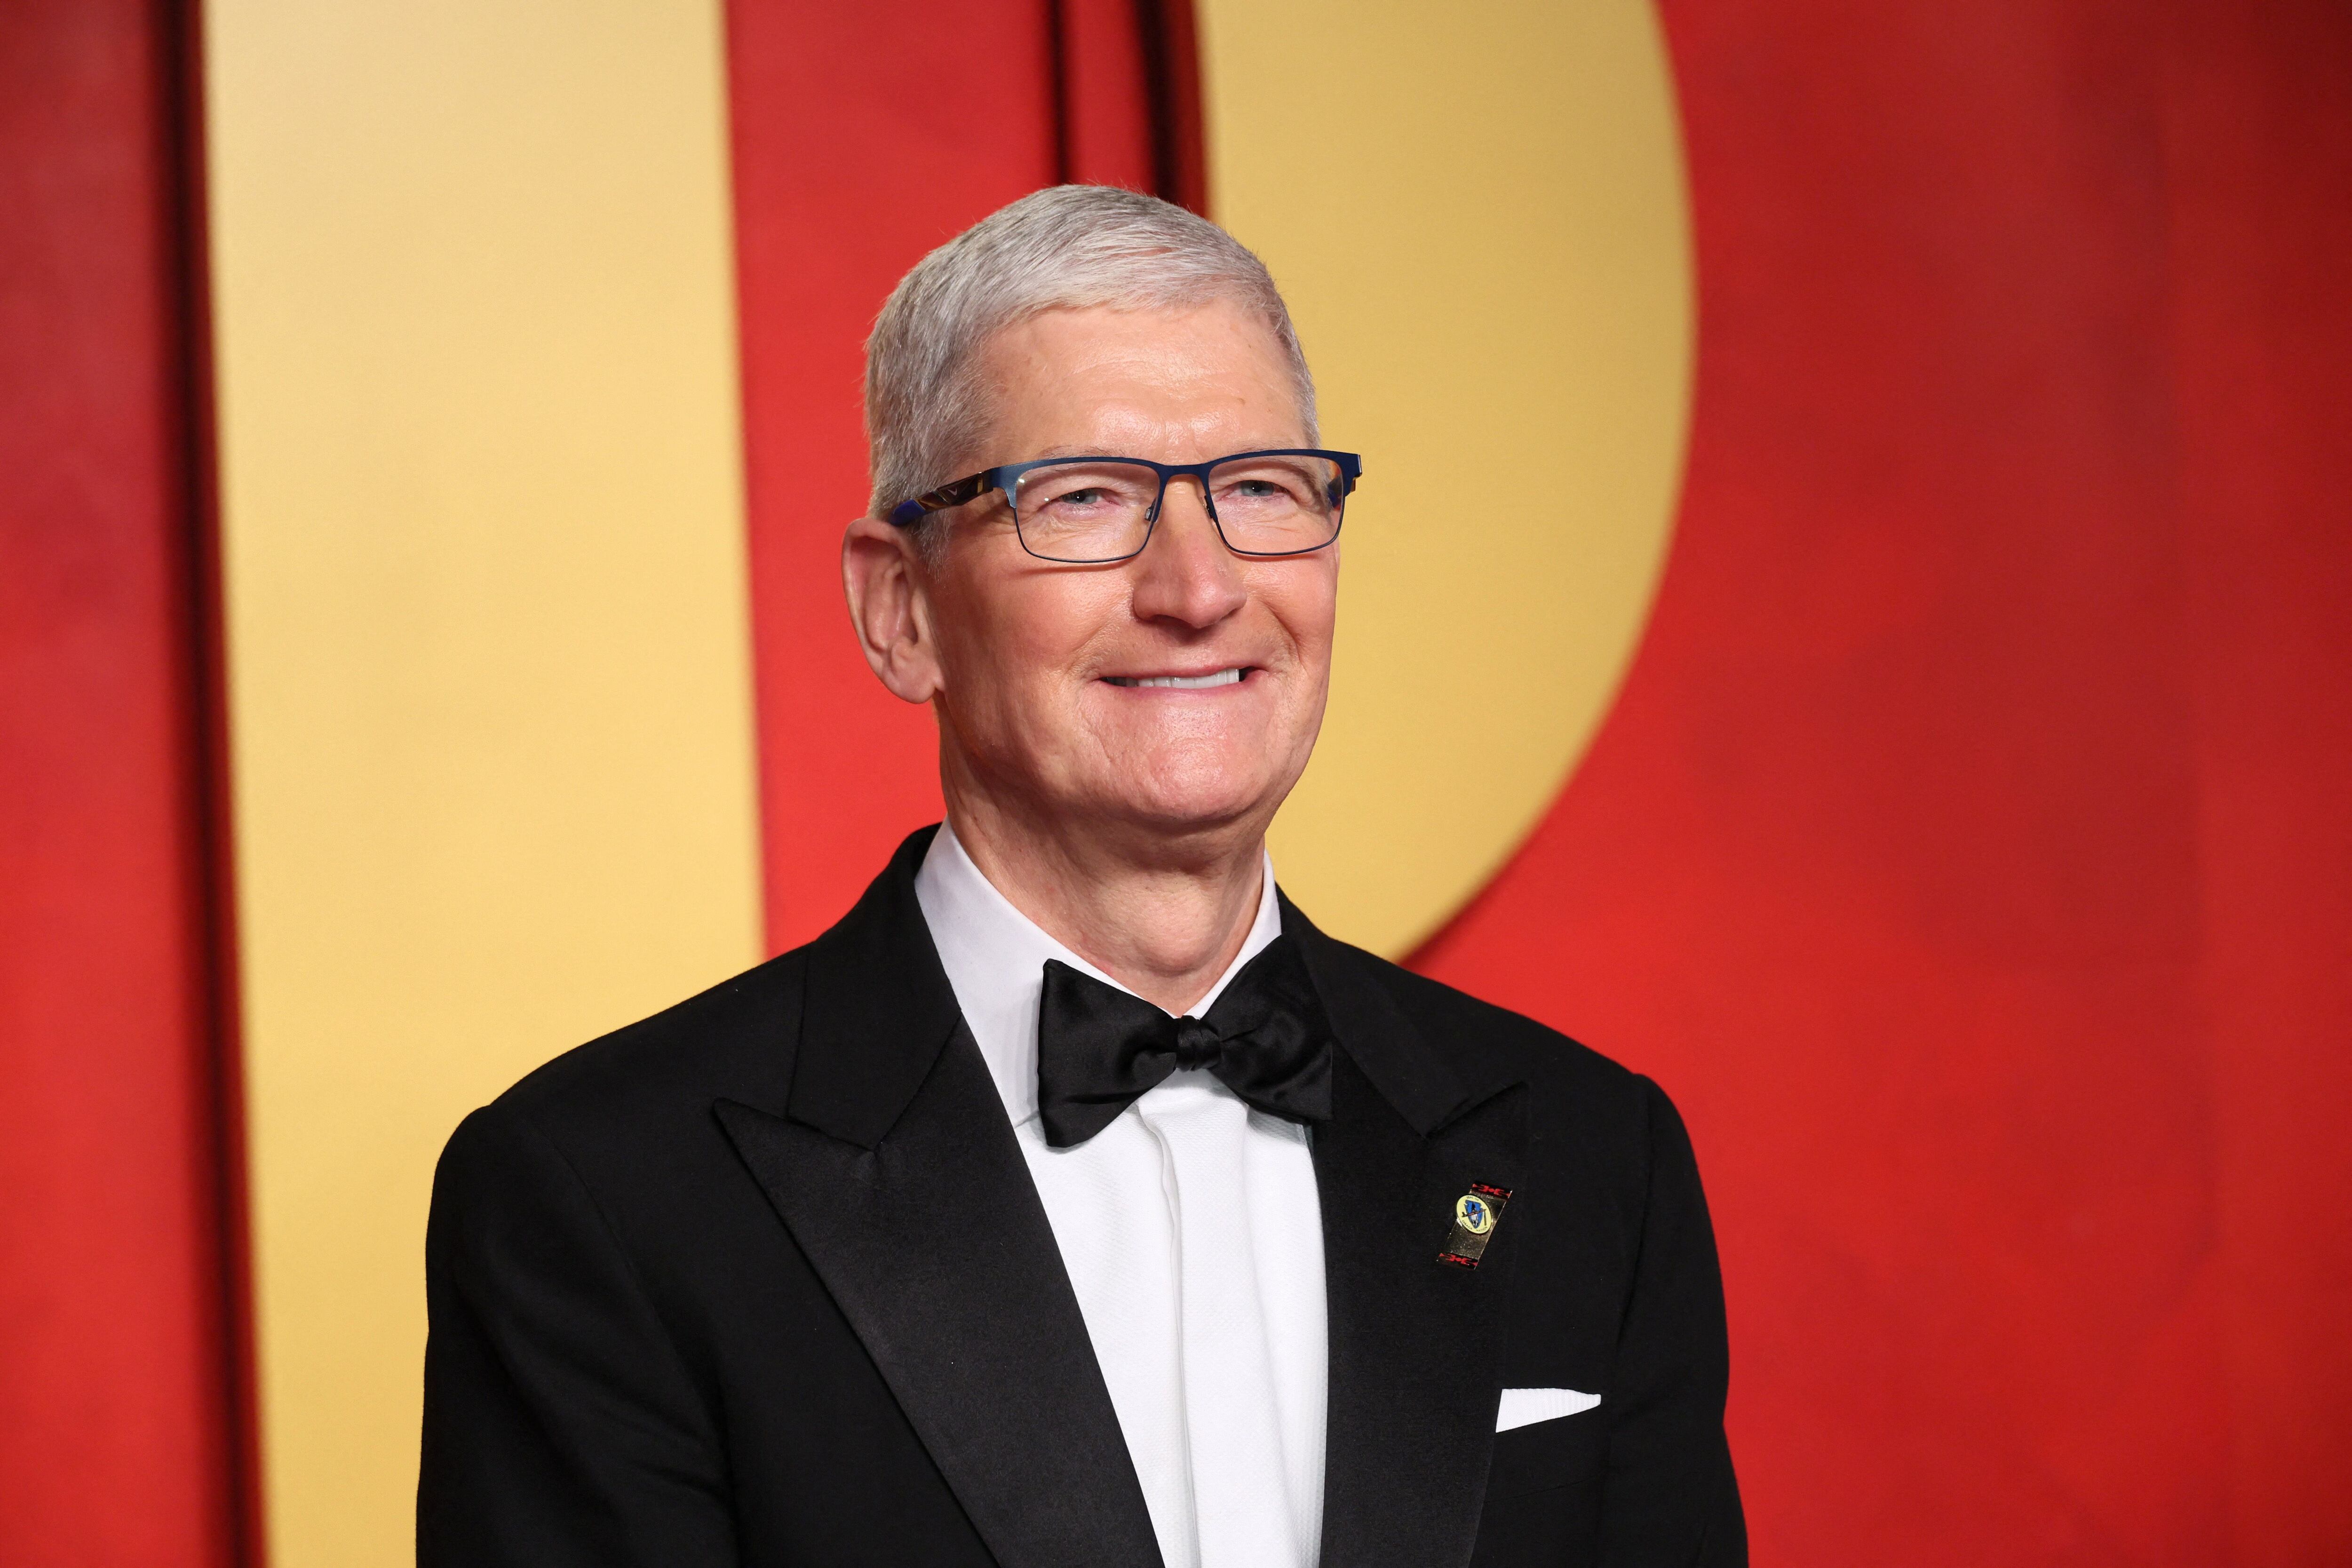 Desde que Cook asumió el liderazgo de Apple, la compañía ha diversificado su cartera de productos y servicios. (REUTERS/Danny Moloshok)